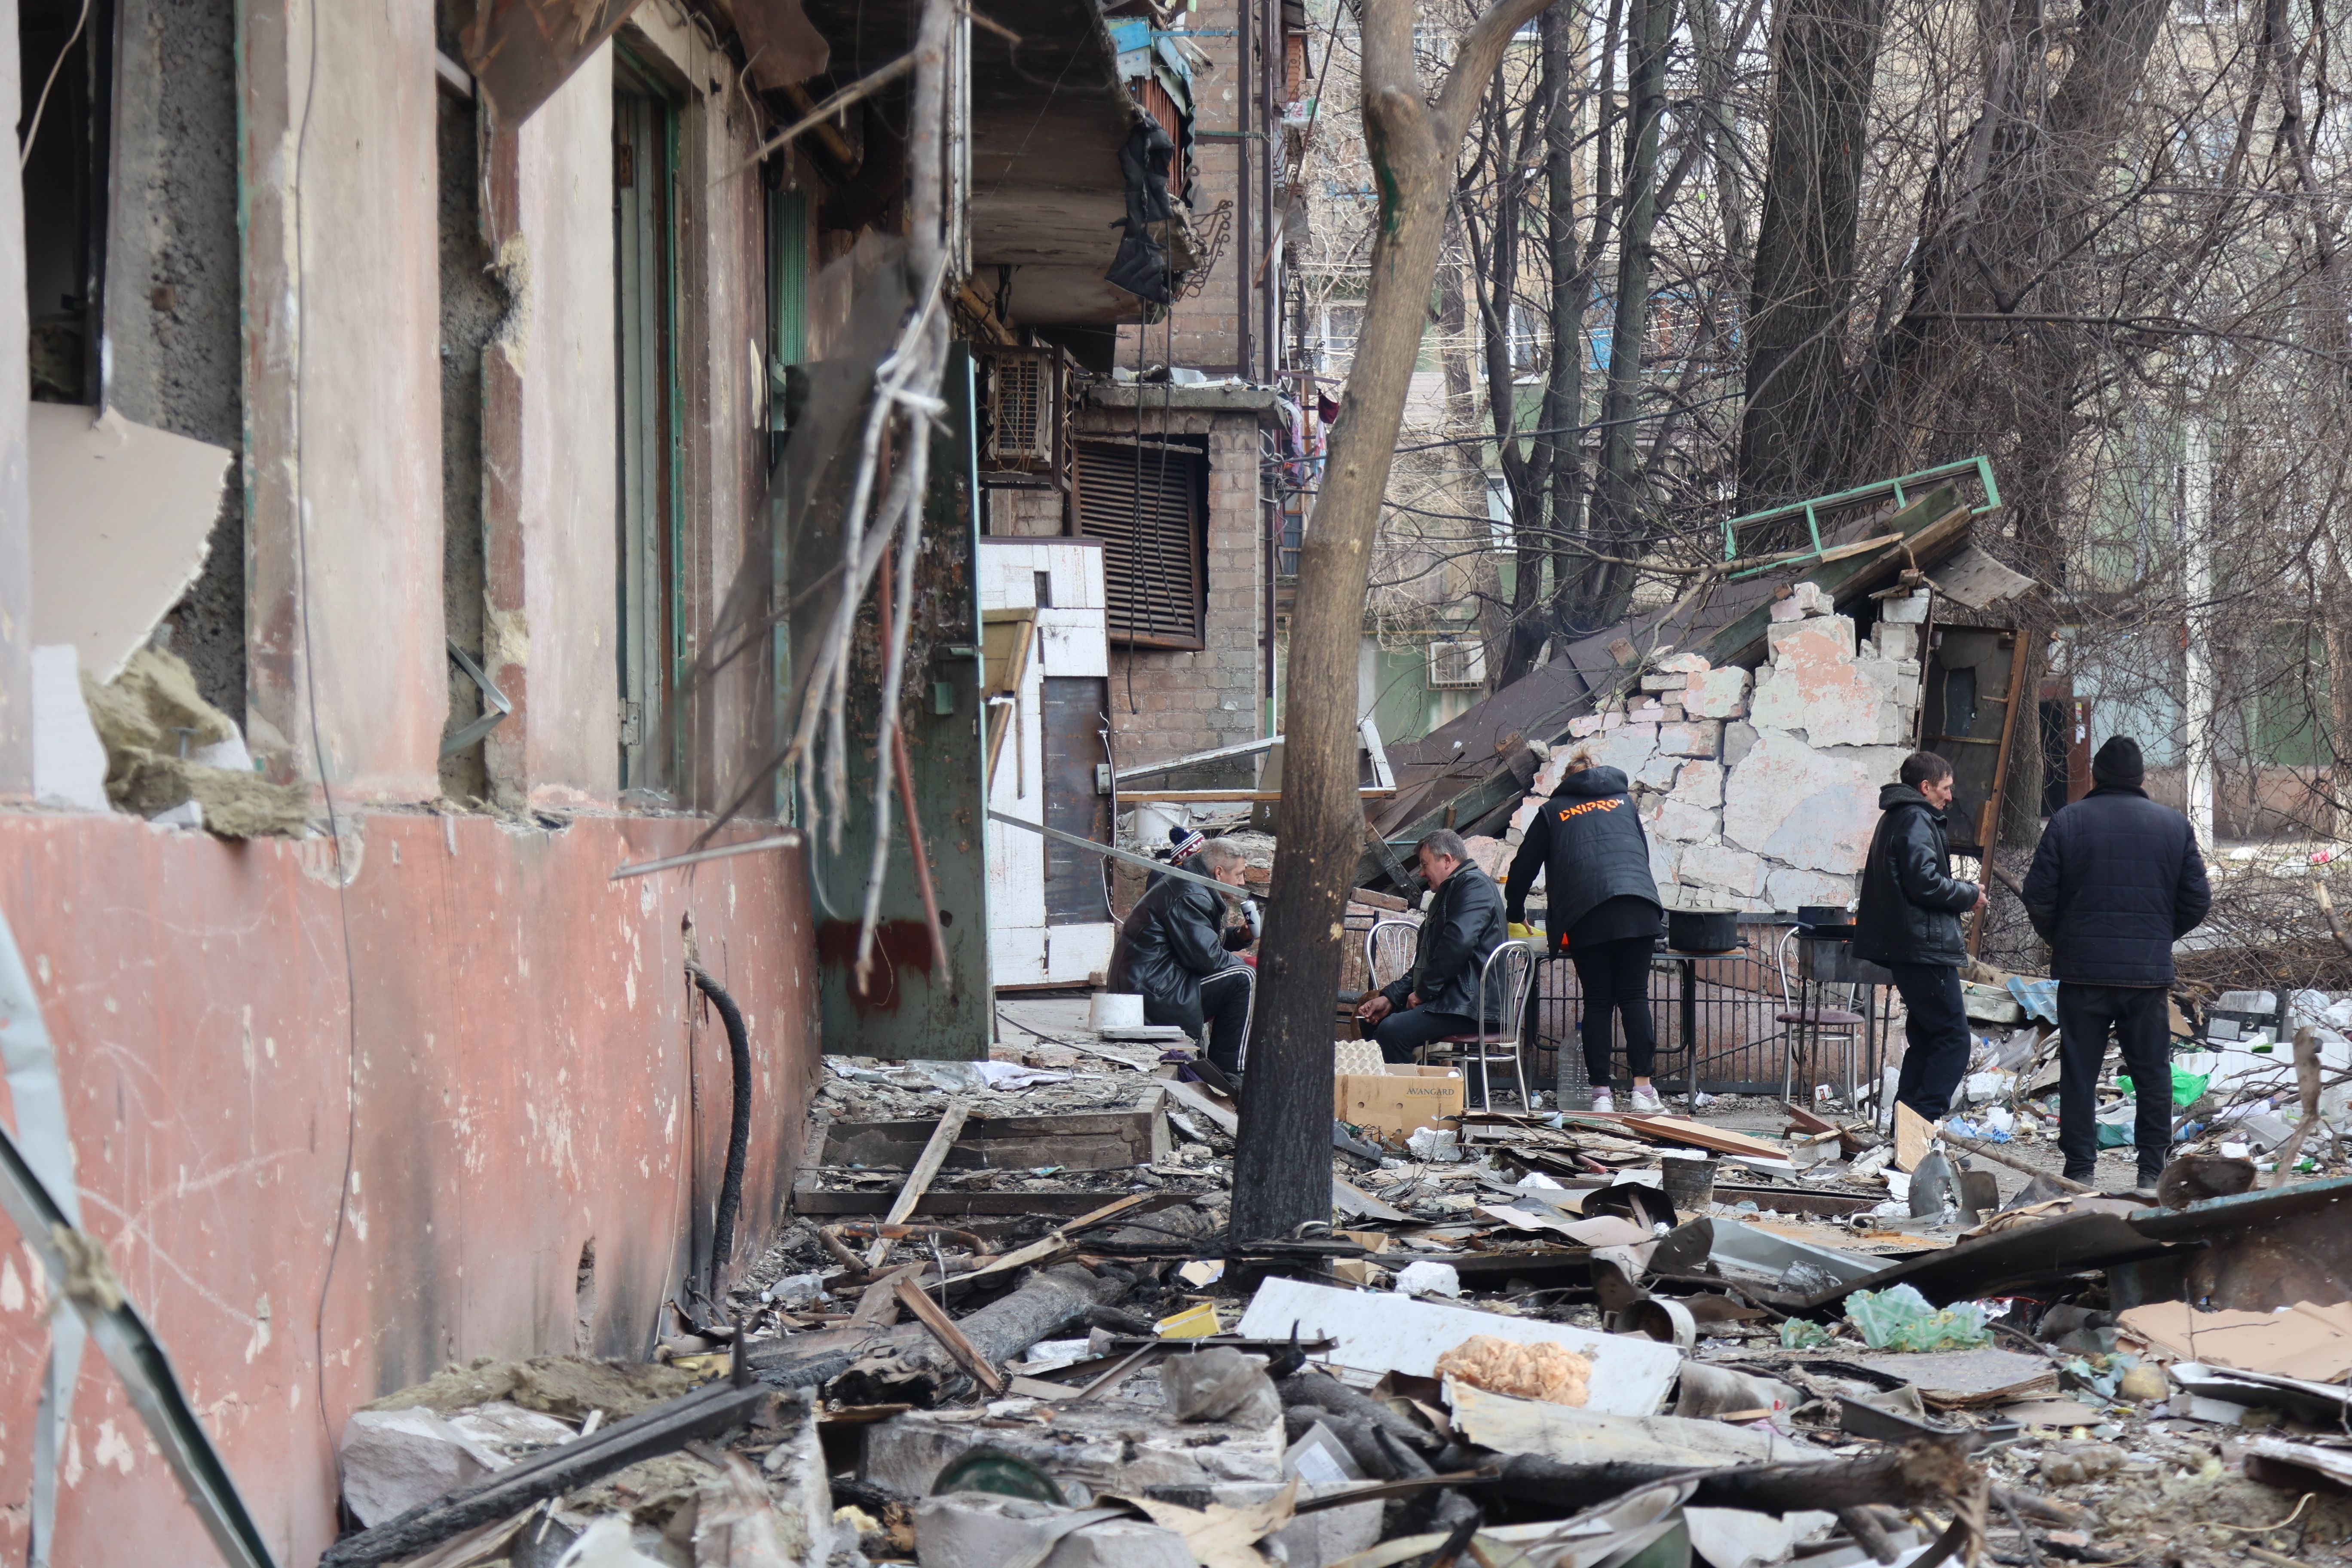     Vista de edifícios e veículos danificados após o bombardeio do exército russo e da cidade ucraniana de Mariupol, controlada pelos separatistas pró-Rússia, em 29 de março.